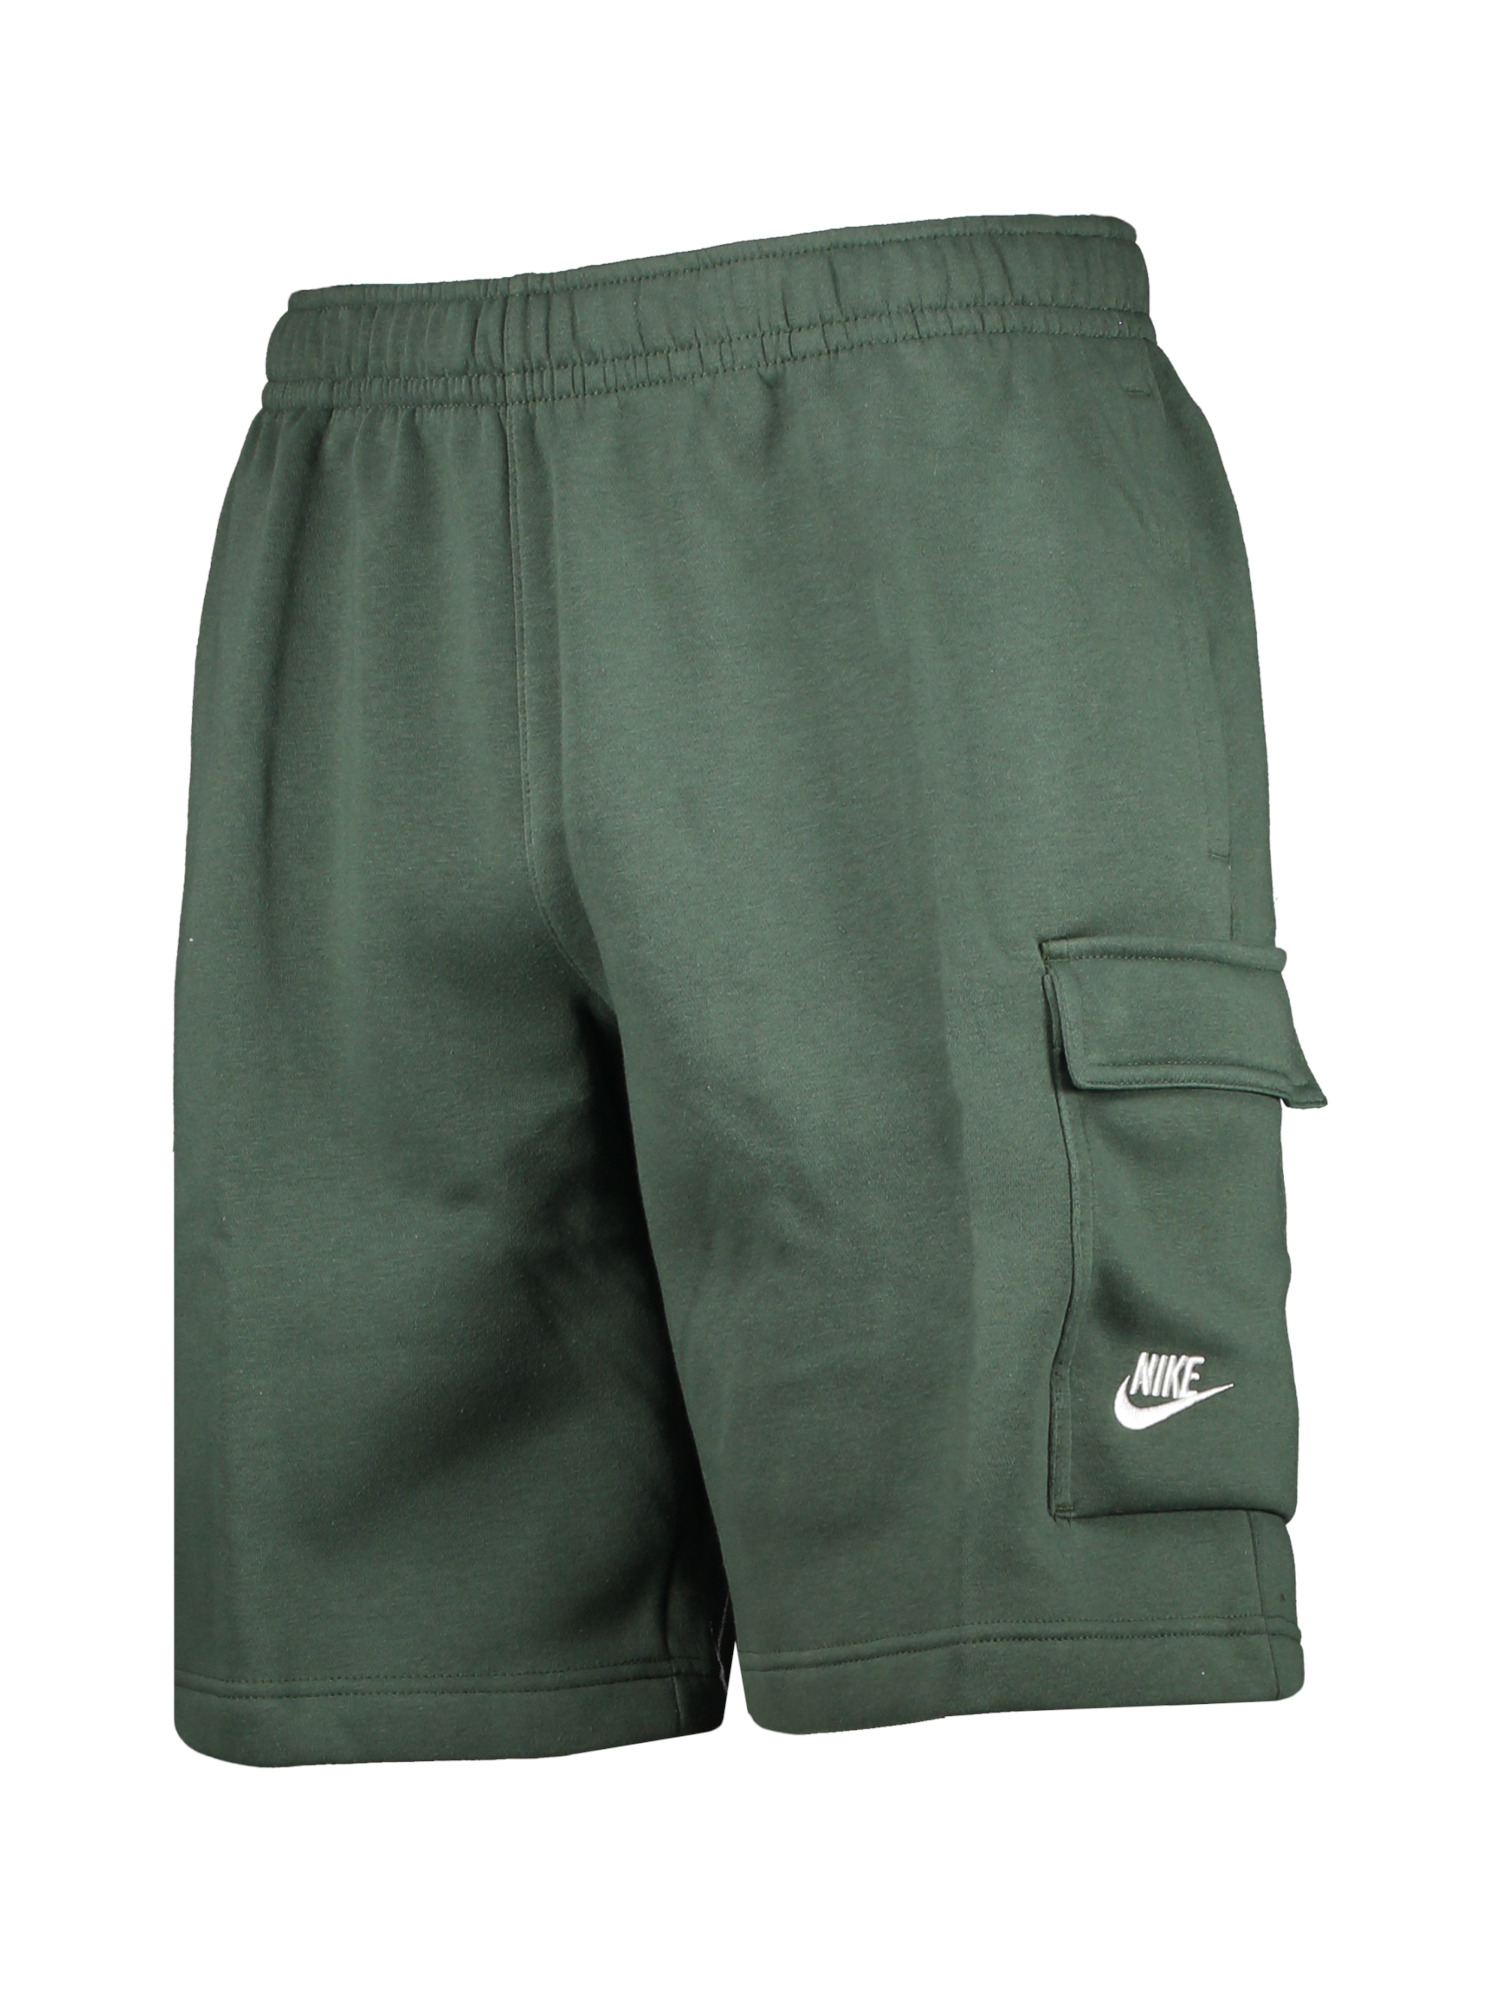 Odzież Mężczyźni Nike Sportswear Spodnie w kolorze Zielonym 